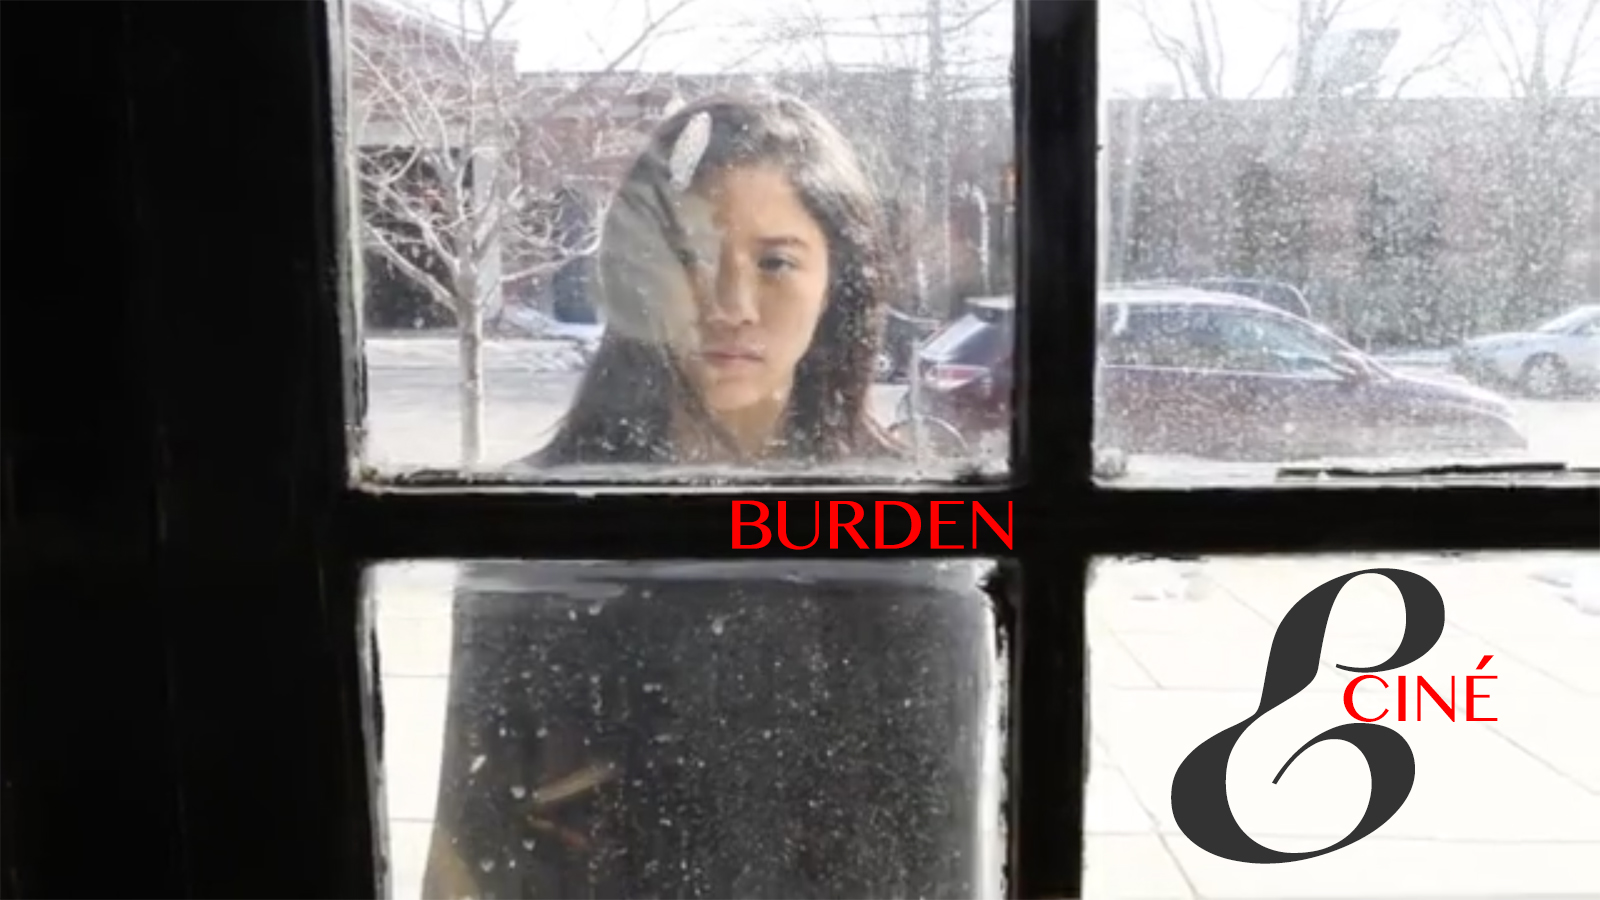 Burden. A film by Paul Gordon Emerson 